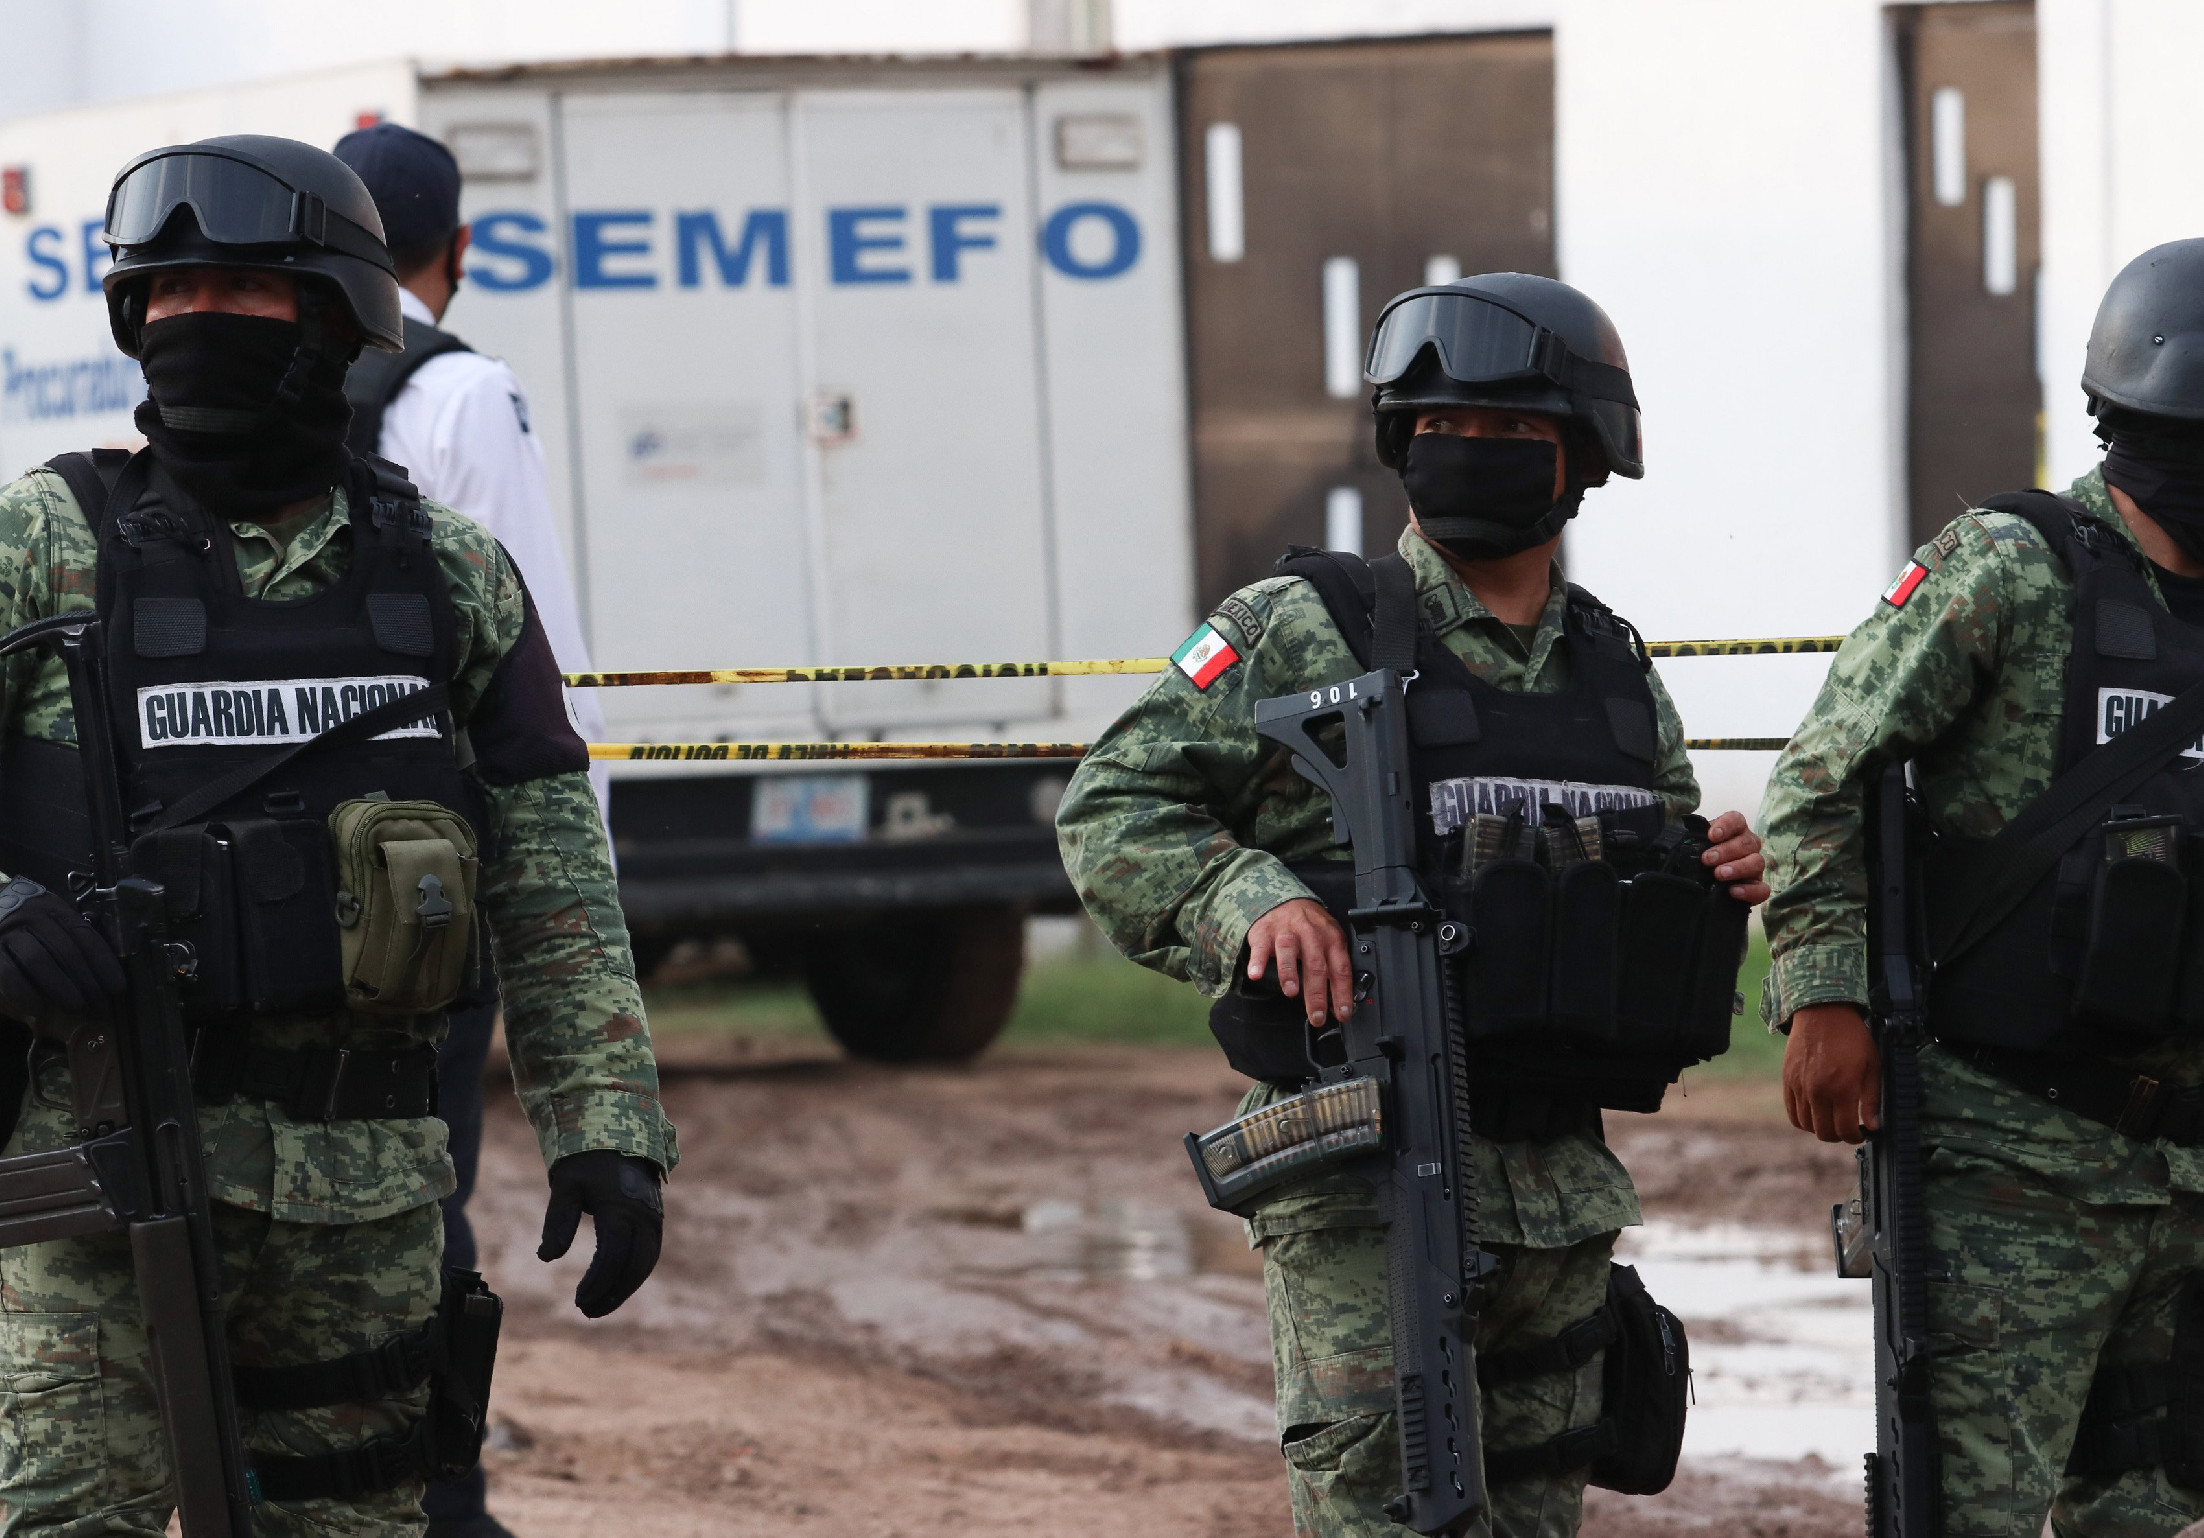 Meghalt a mexikói Nemzeti Gárda egyik parancsnoka egy összecsapásban